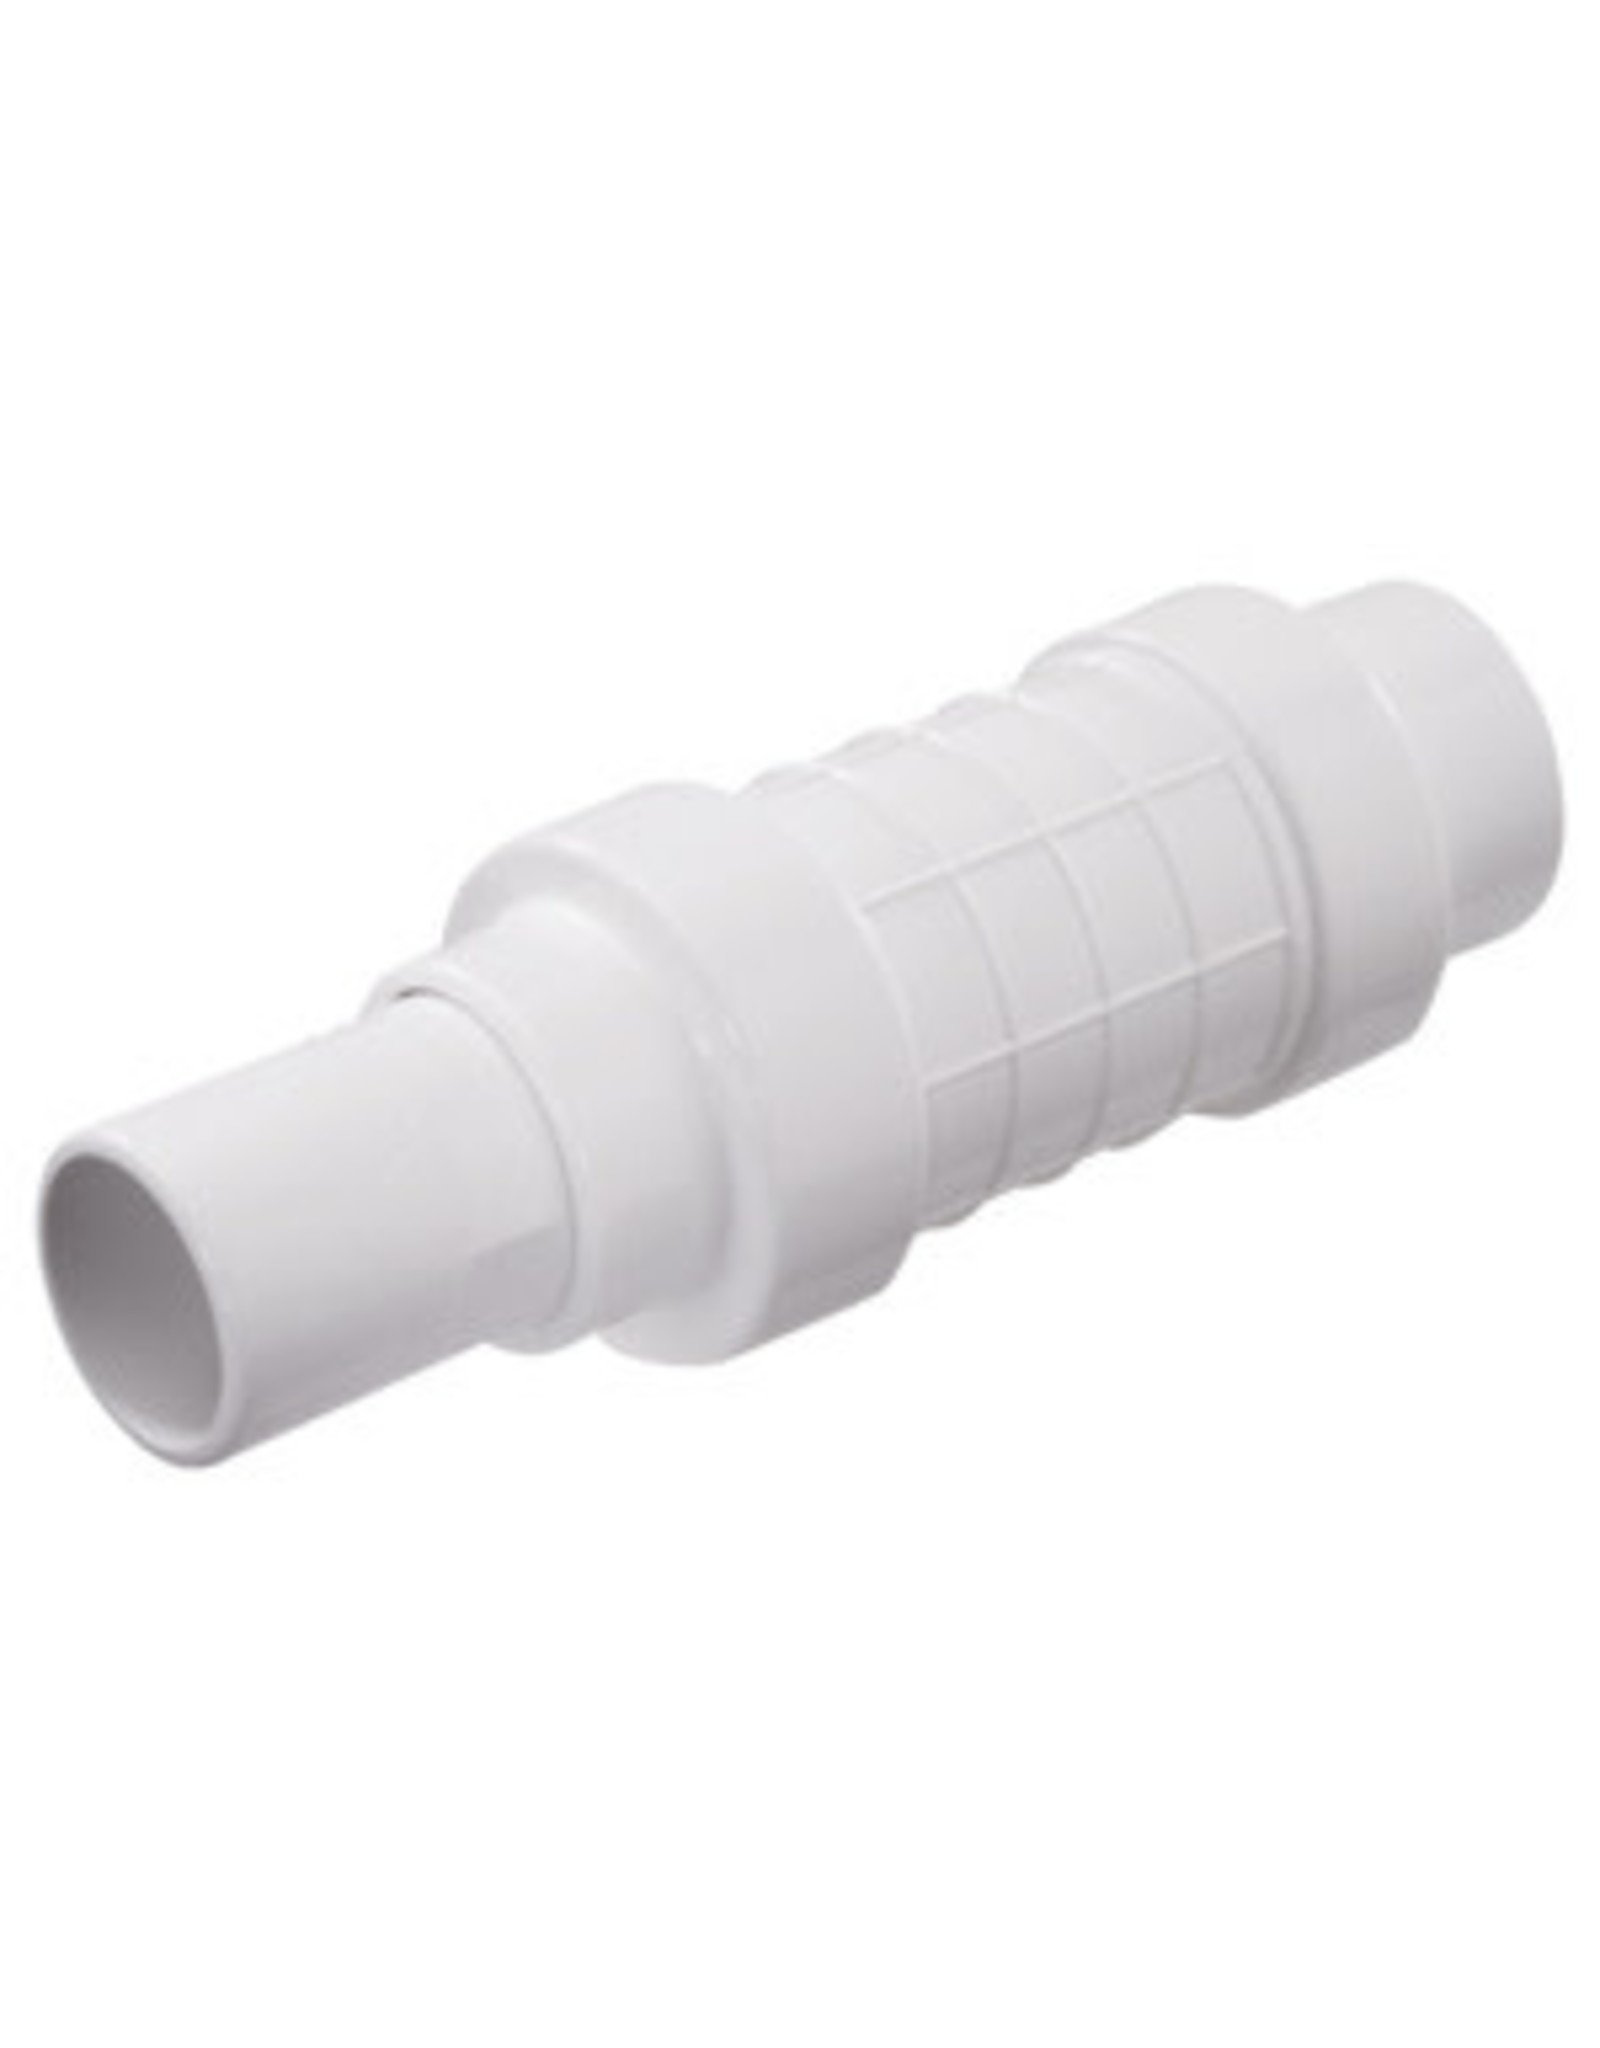 NDS NDS Quik-Fix QF-0500 Pipe Repair Coupler, 1/2 in, Socket x Spigot, White, SCH 40 Schedule, 150 psi Pressure